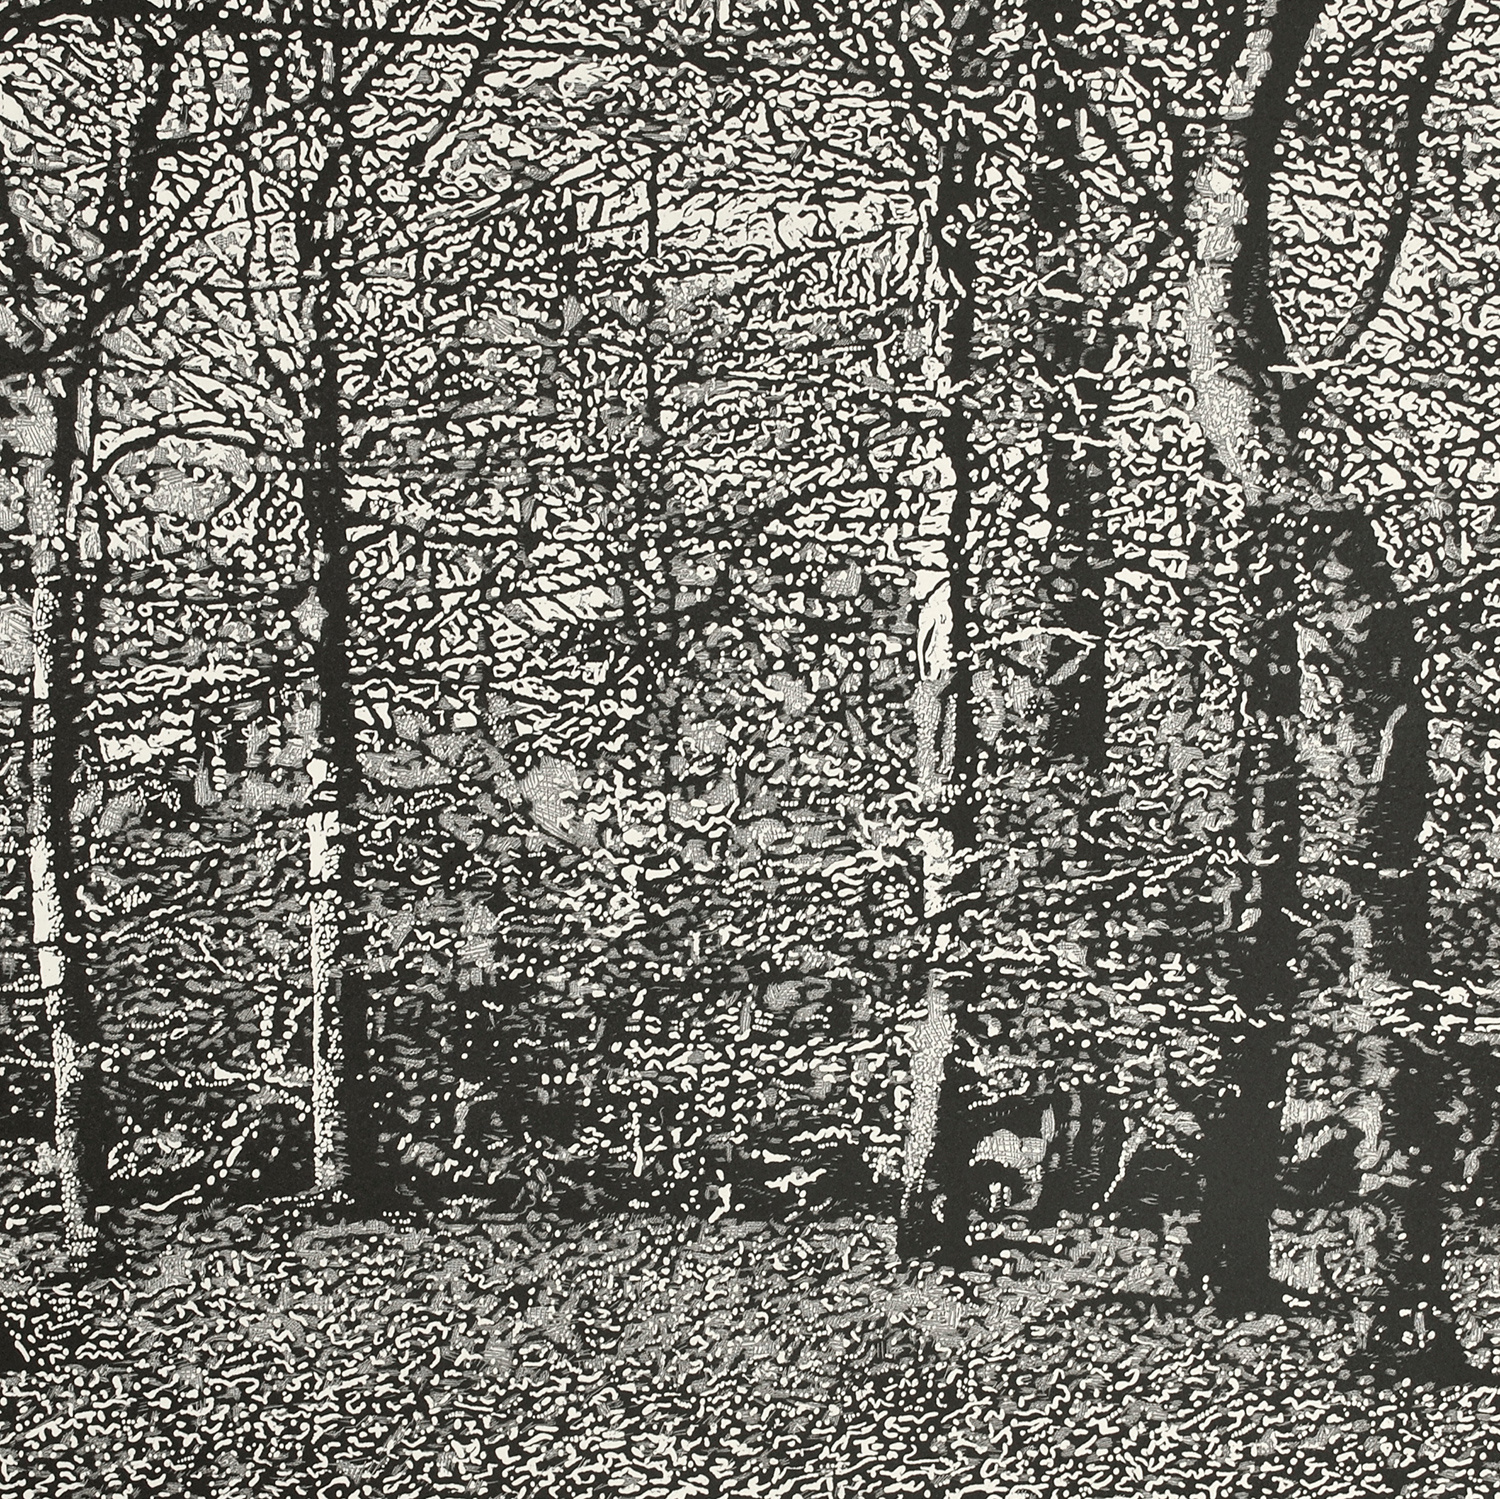 Woodland II by Trevor Price